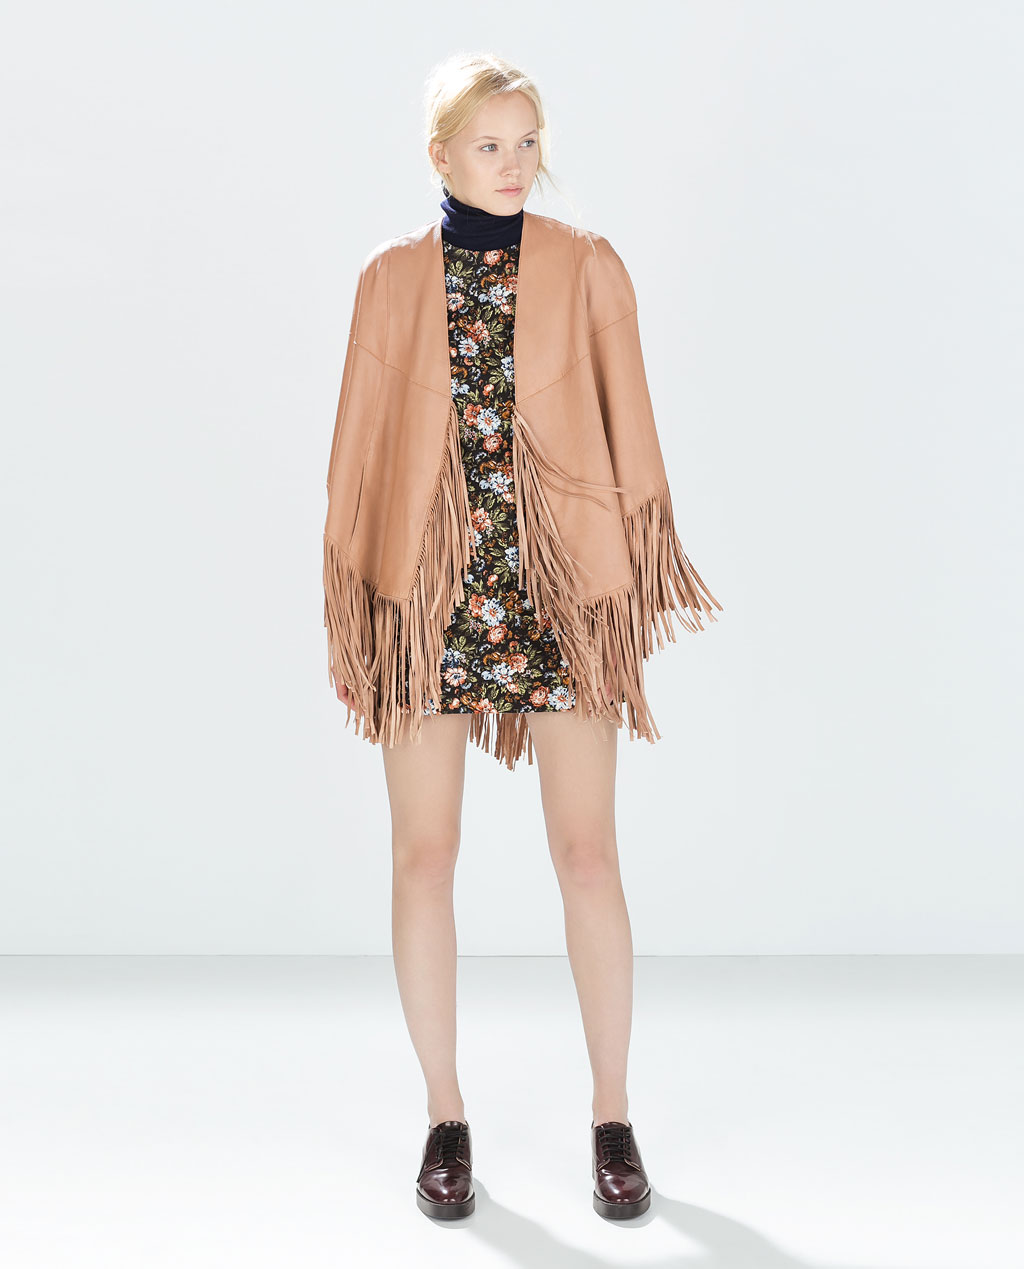 Zara premium colección otoño invierno 